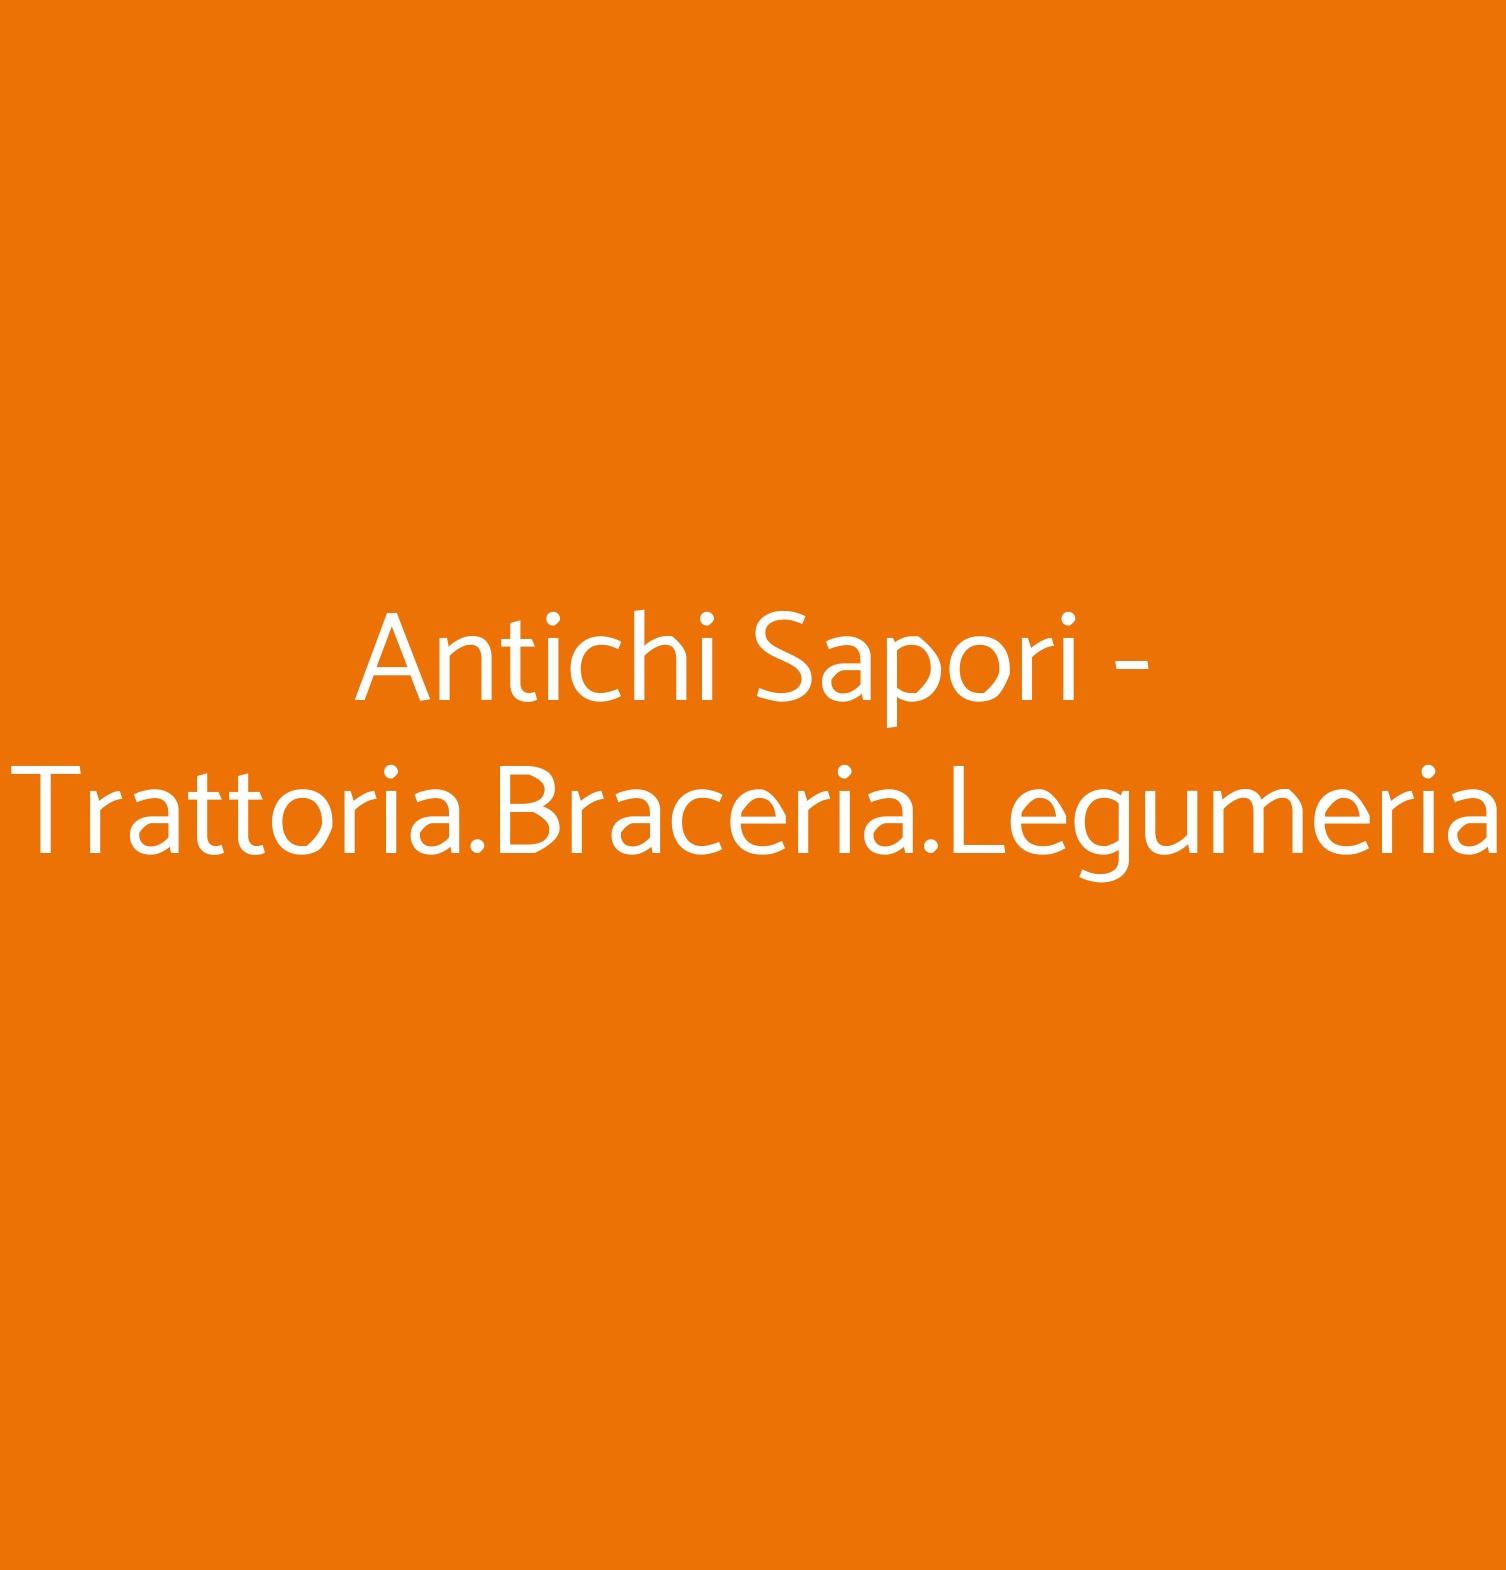 Antichi Sapori - Trattoria.Braceria.Legumeria Catania menù 1 pagina